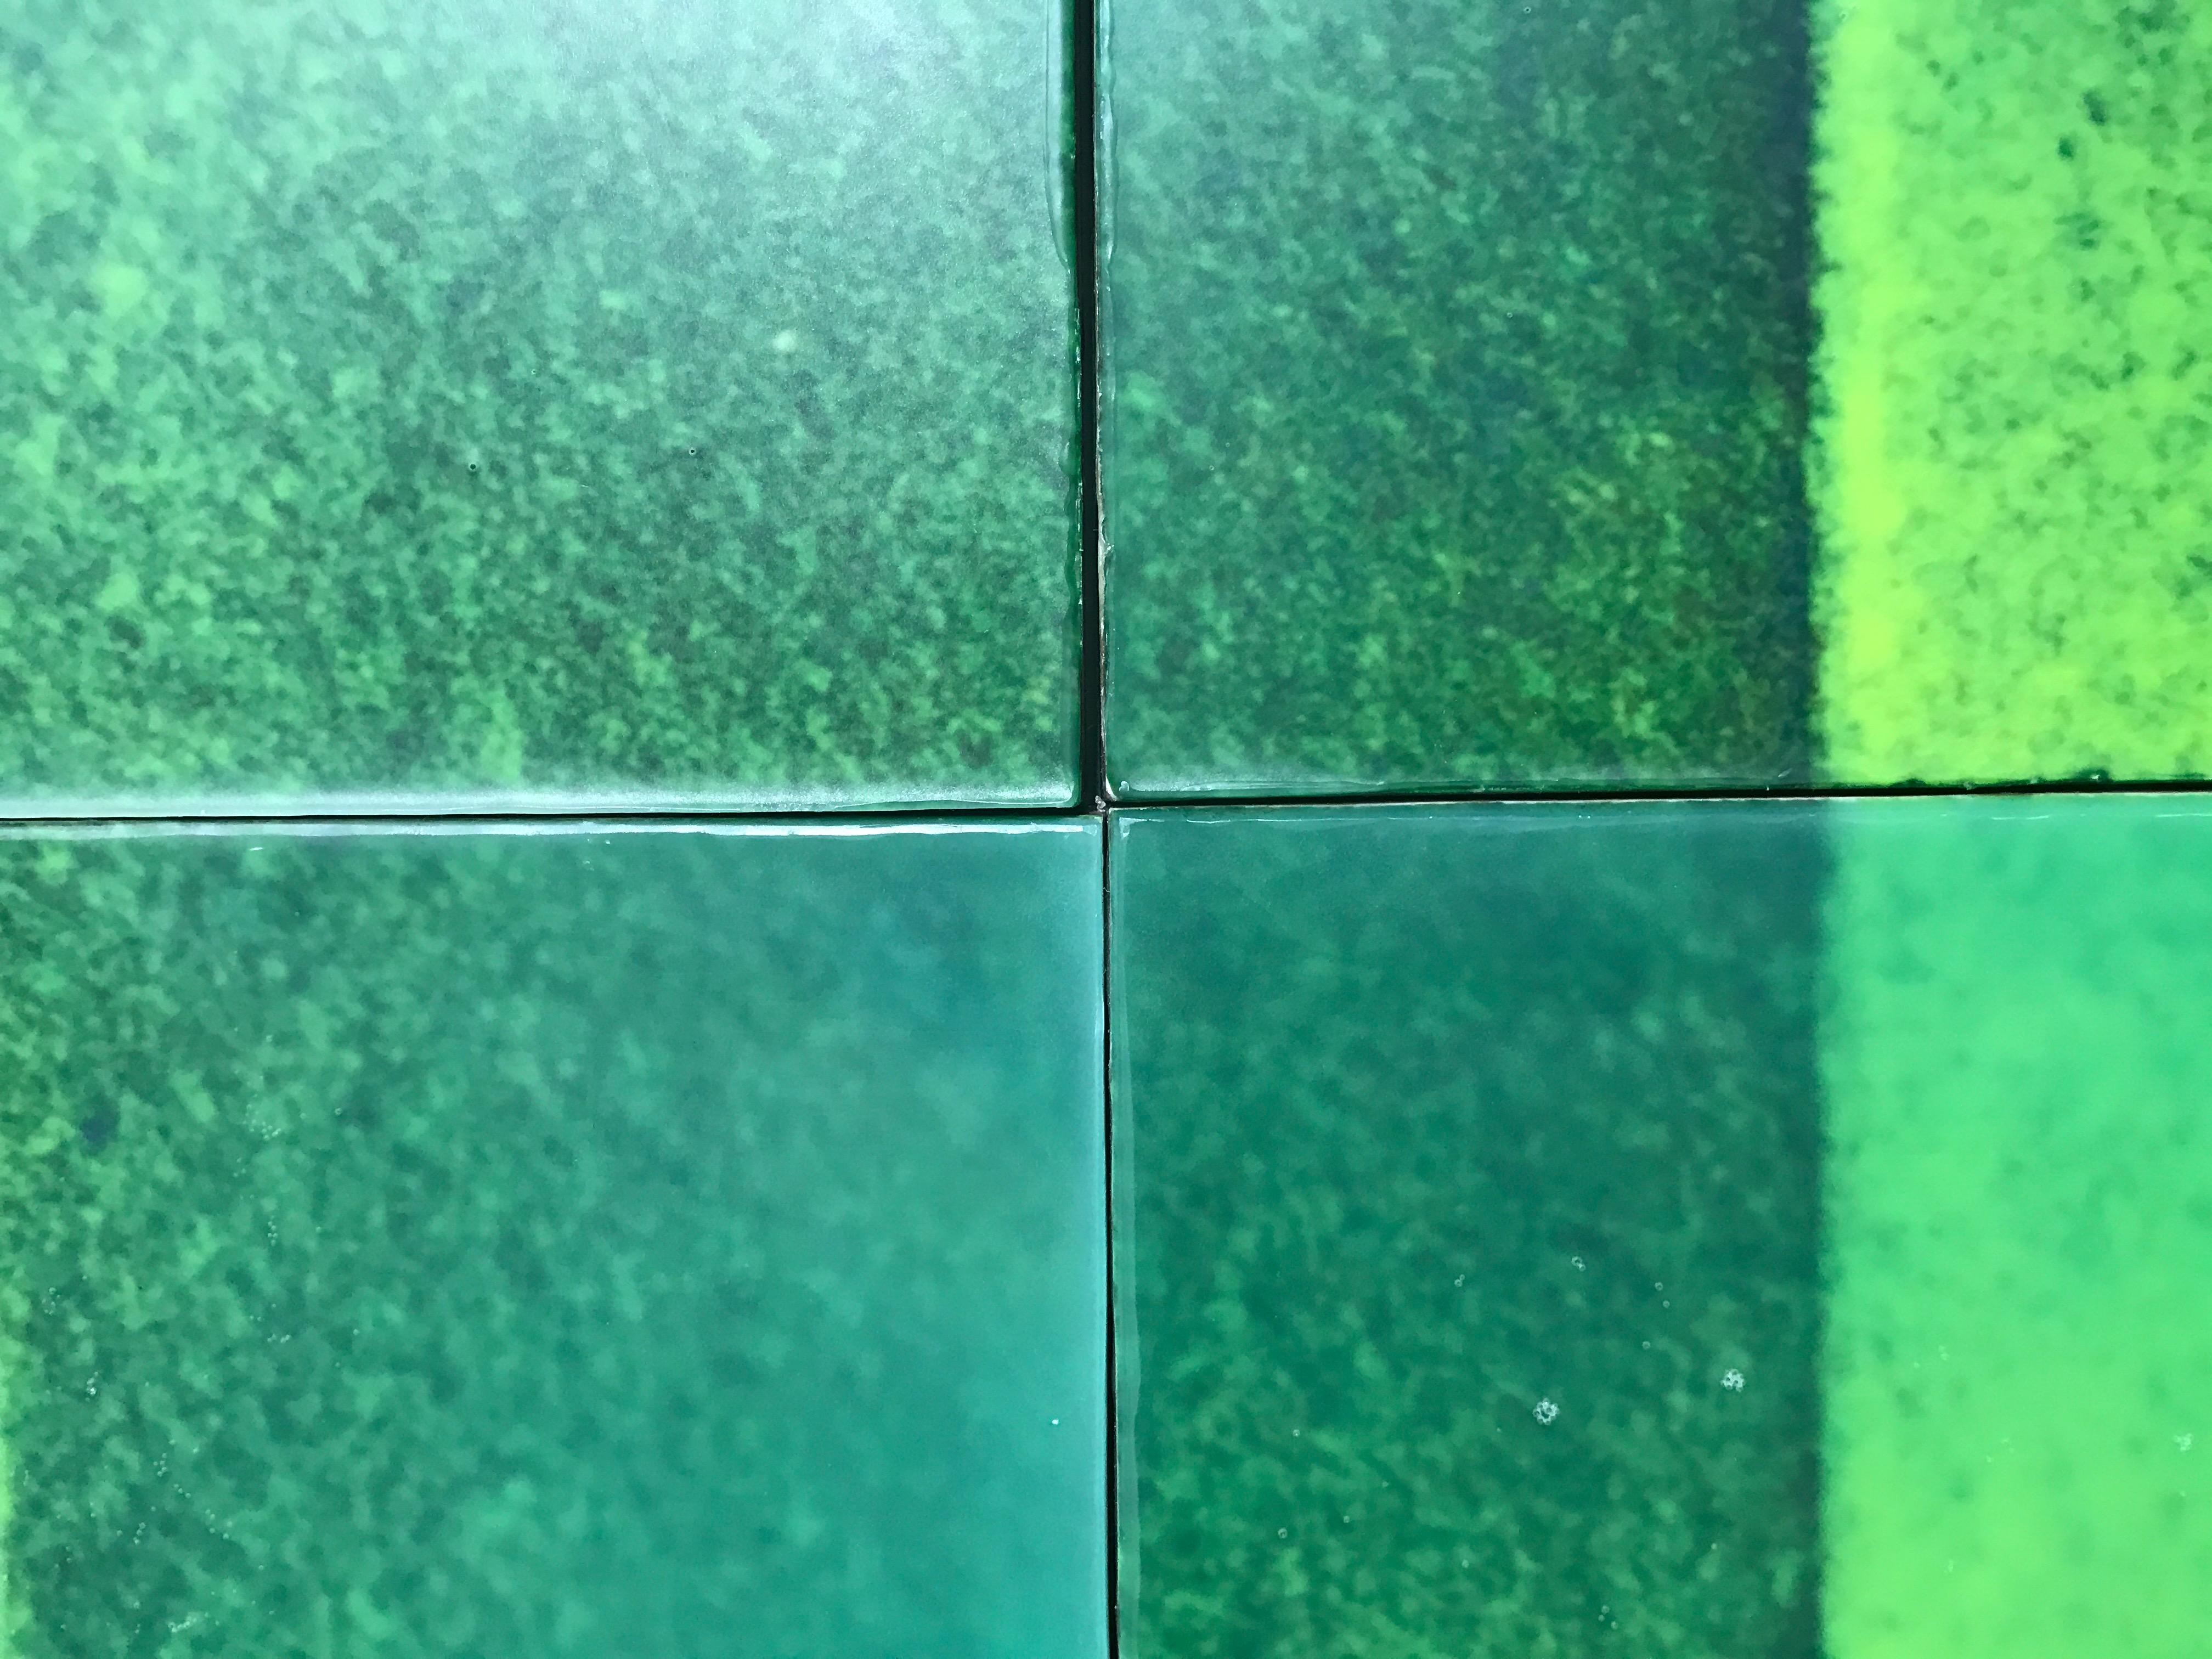 Lebhaftes Smaragdgrün, leuchtendes Orange und violette Blautöne werden in Joanne Ungars einzigartigem Wachsgießverfahren zu dieser mehrteiligen Wandinstallation verarbeitet.  37 